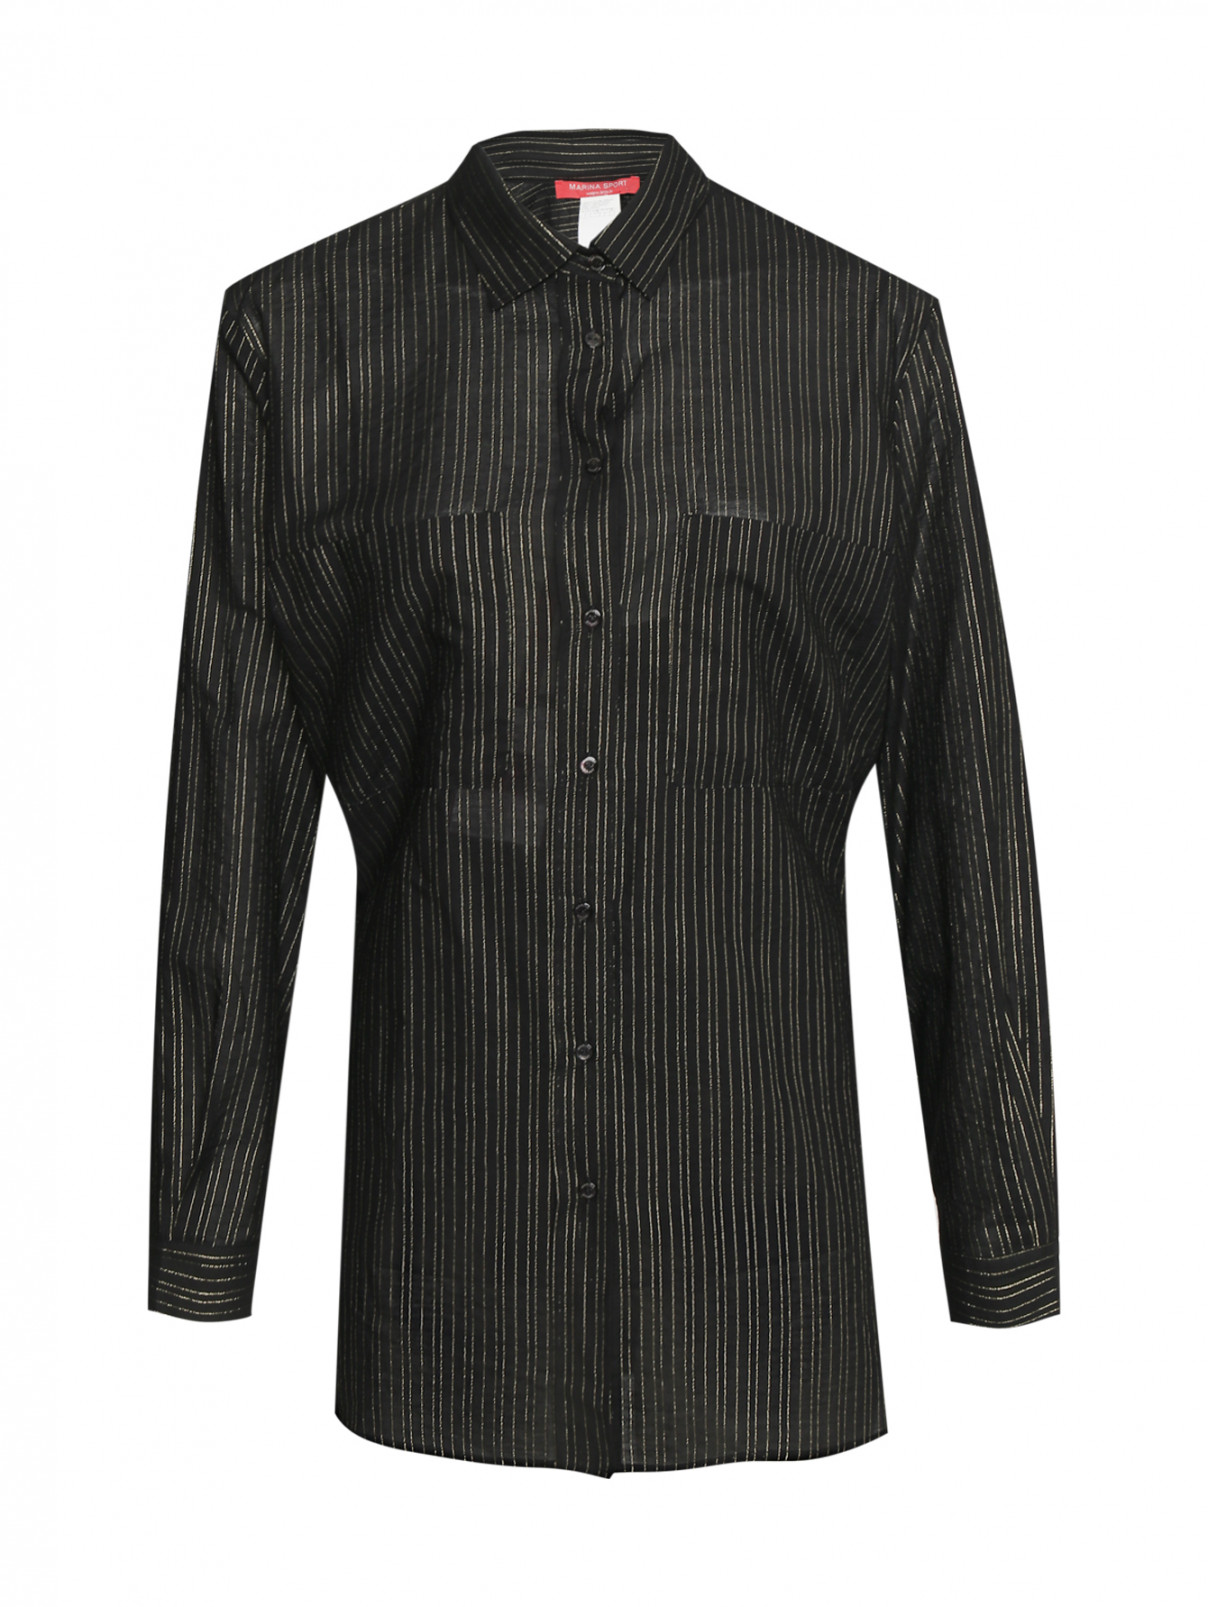 Блуза из хлопка с накладными карманами Marina Rinaldi  –  Общий вид  – Цвет:  Черный